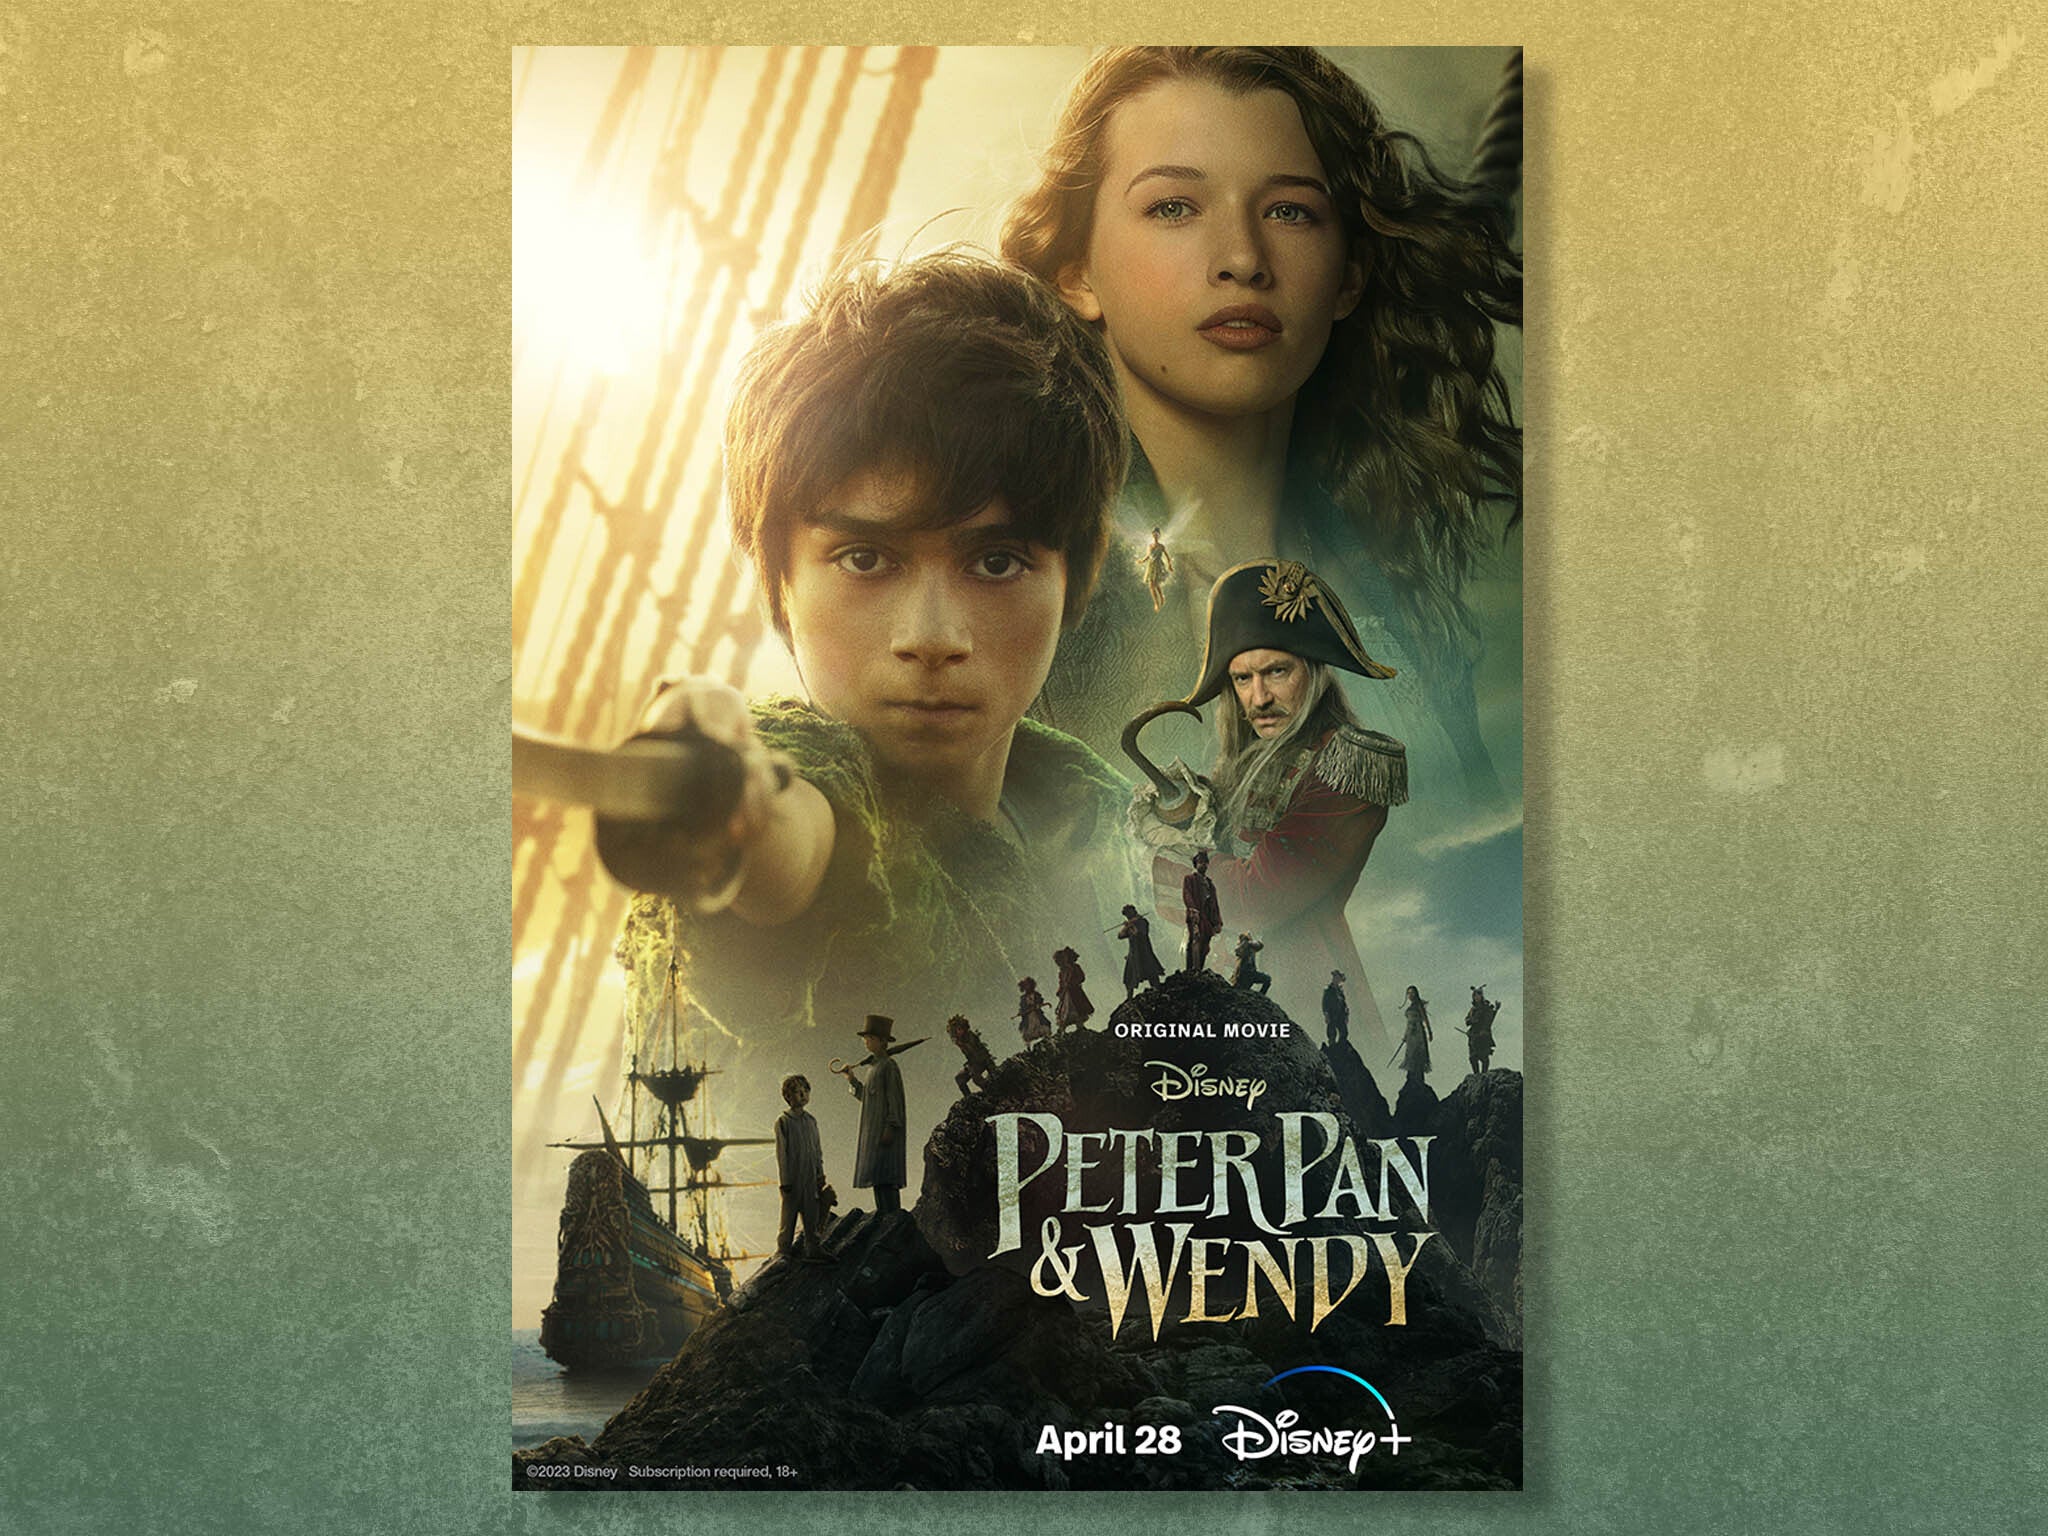 Peter Pan & Wendy' trailer sparks Disney nostalgia